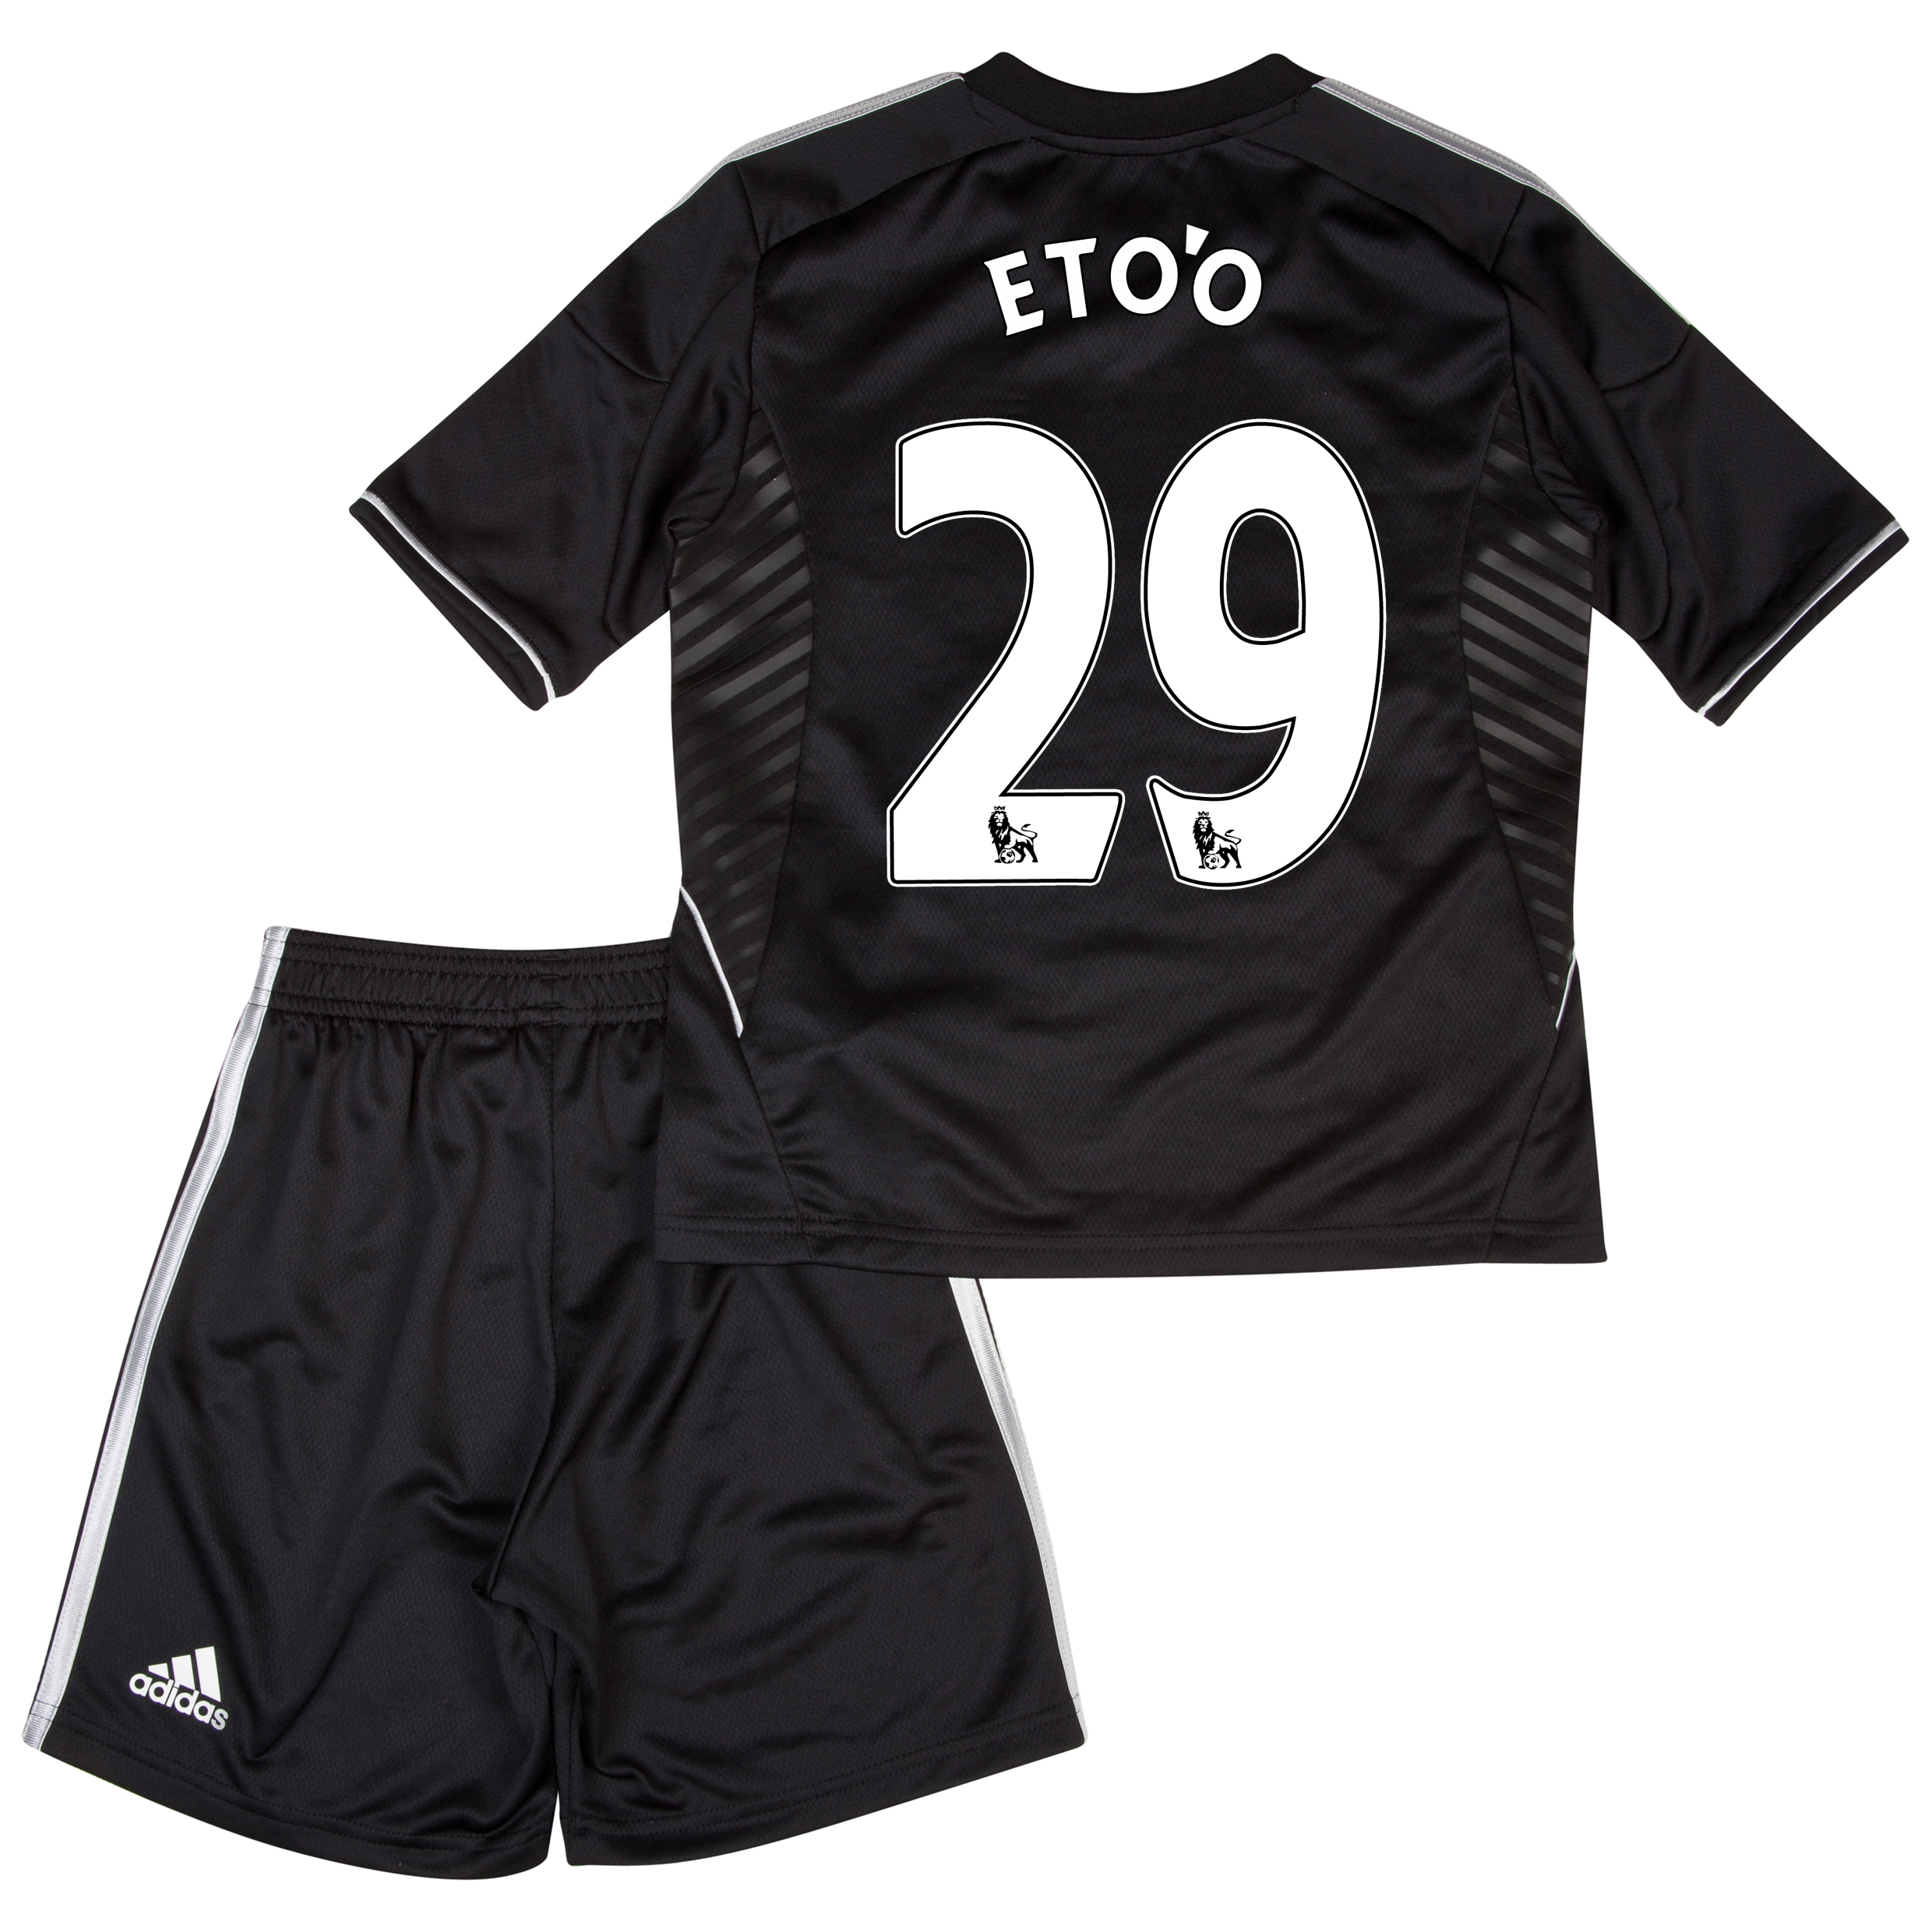 Chelsea Third Mini Kit 2013/14 with Eto'o 29 printing